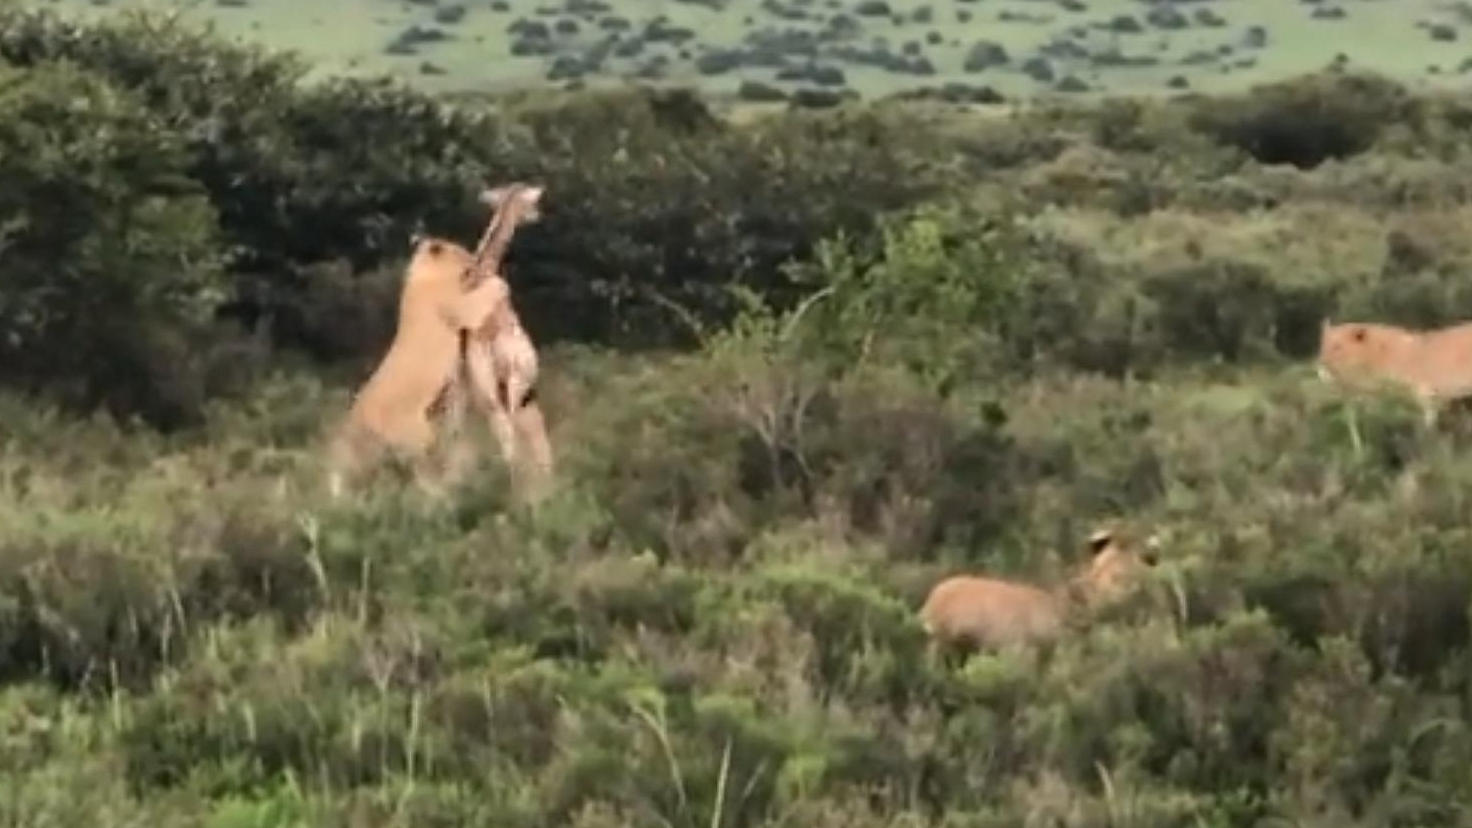 Giraffen-Mutter riskiert eigenes Leben um Kalb zu schützen Hungrige Löwen lauern auf fette Beute